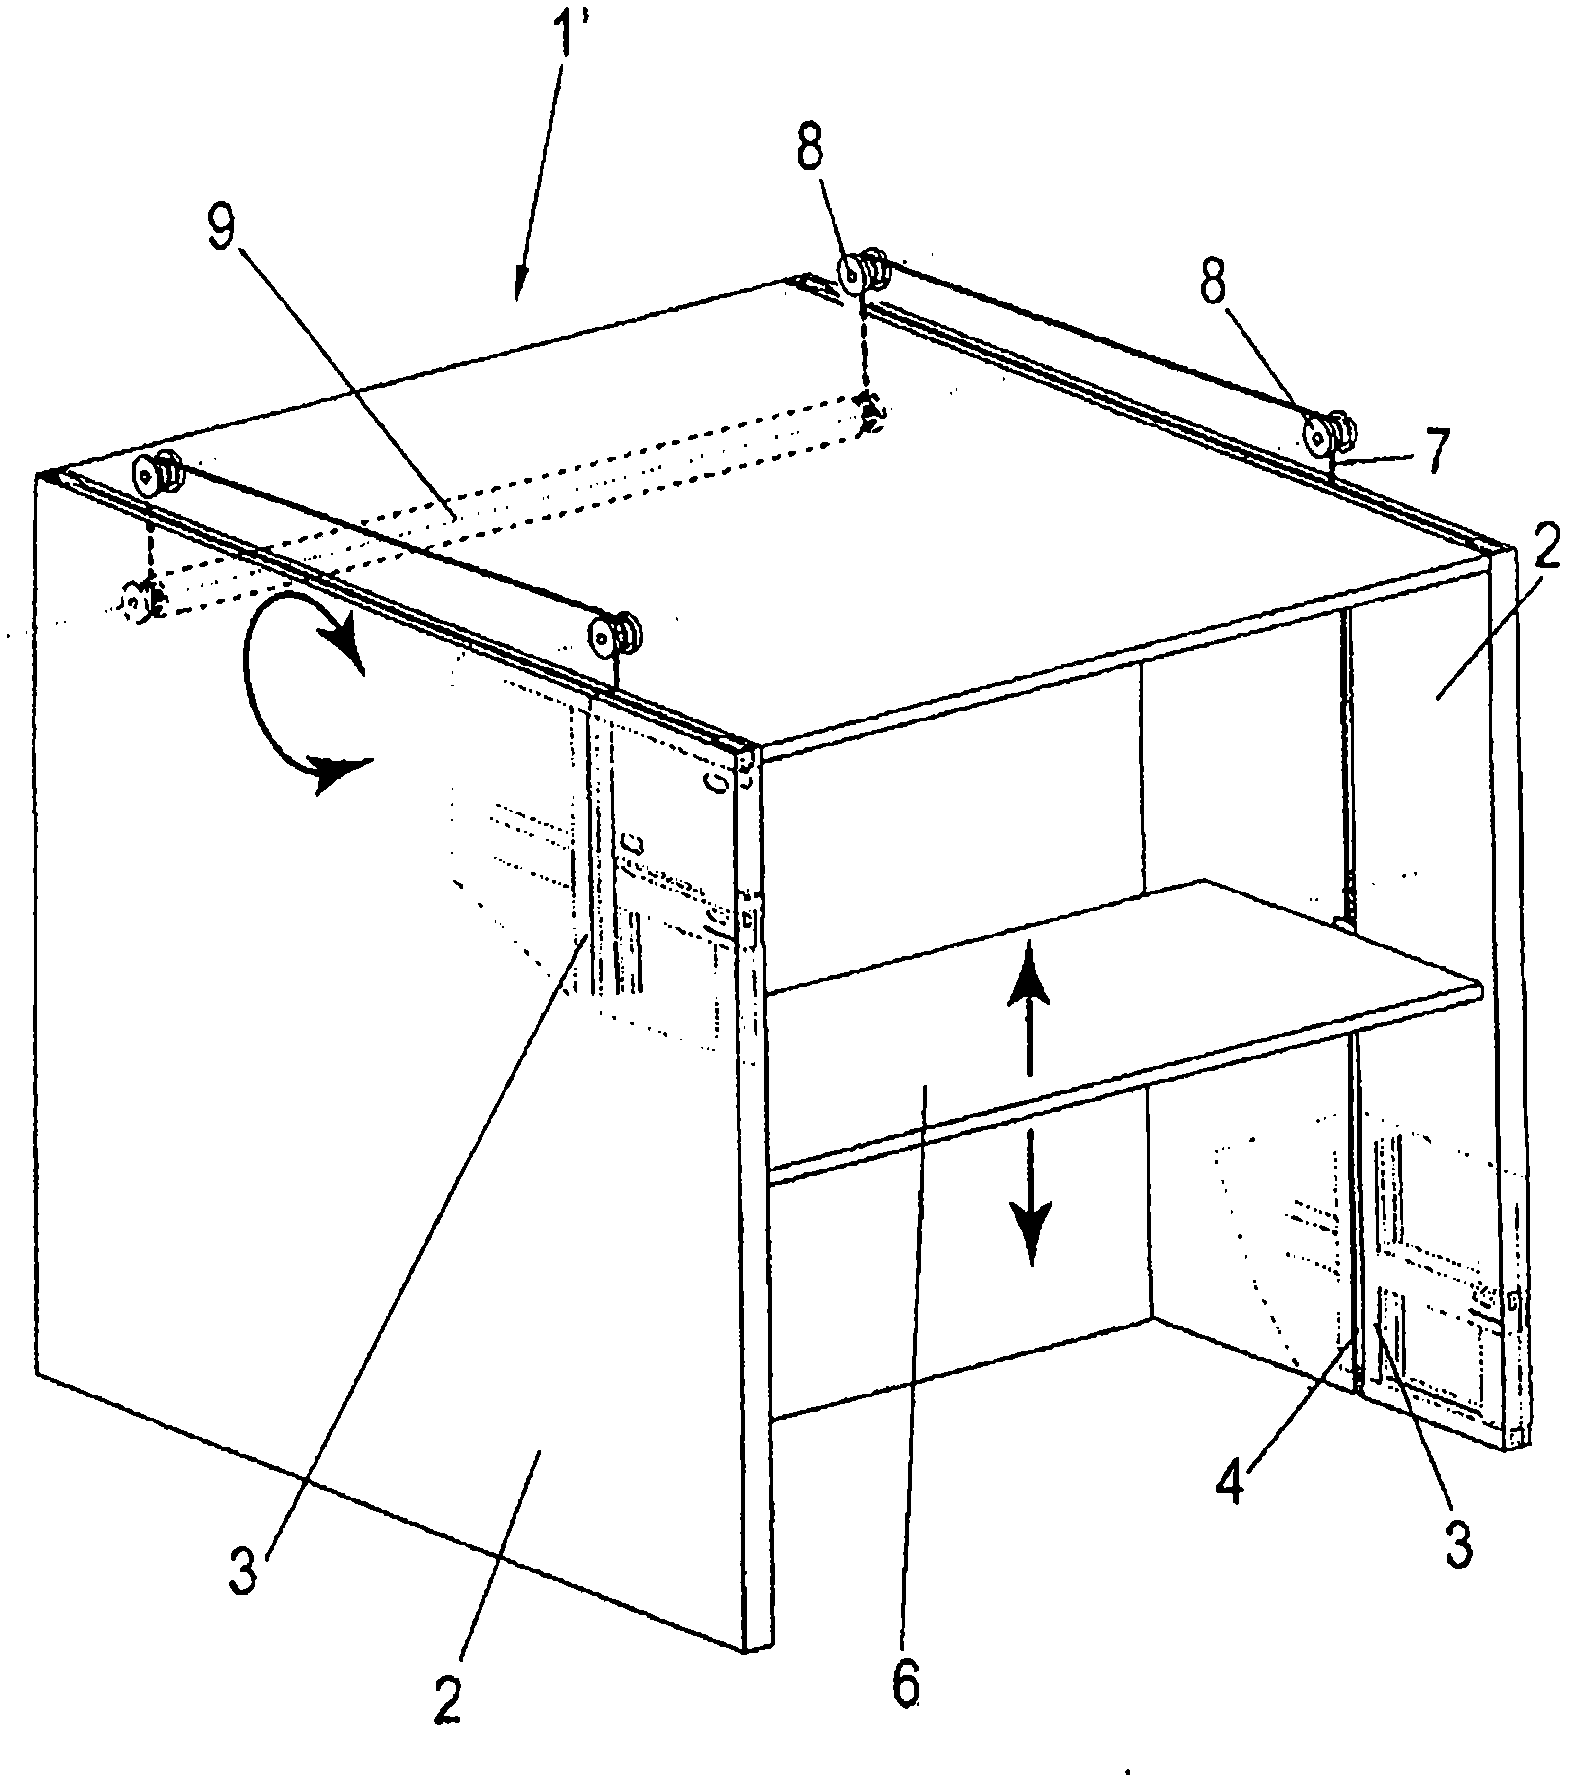 Item of furniture